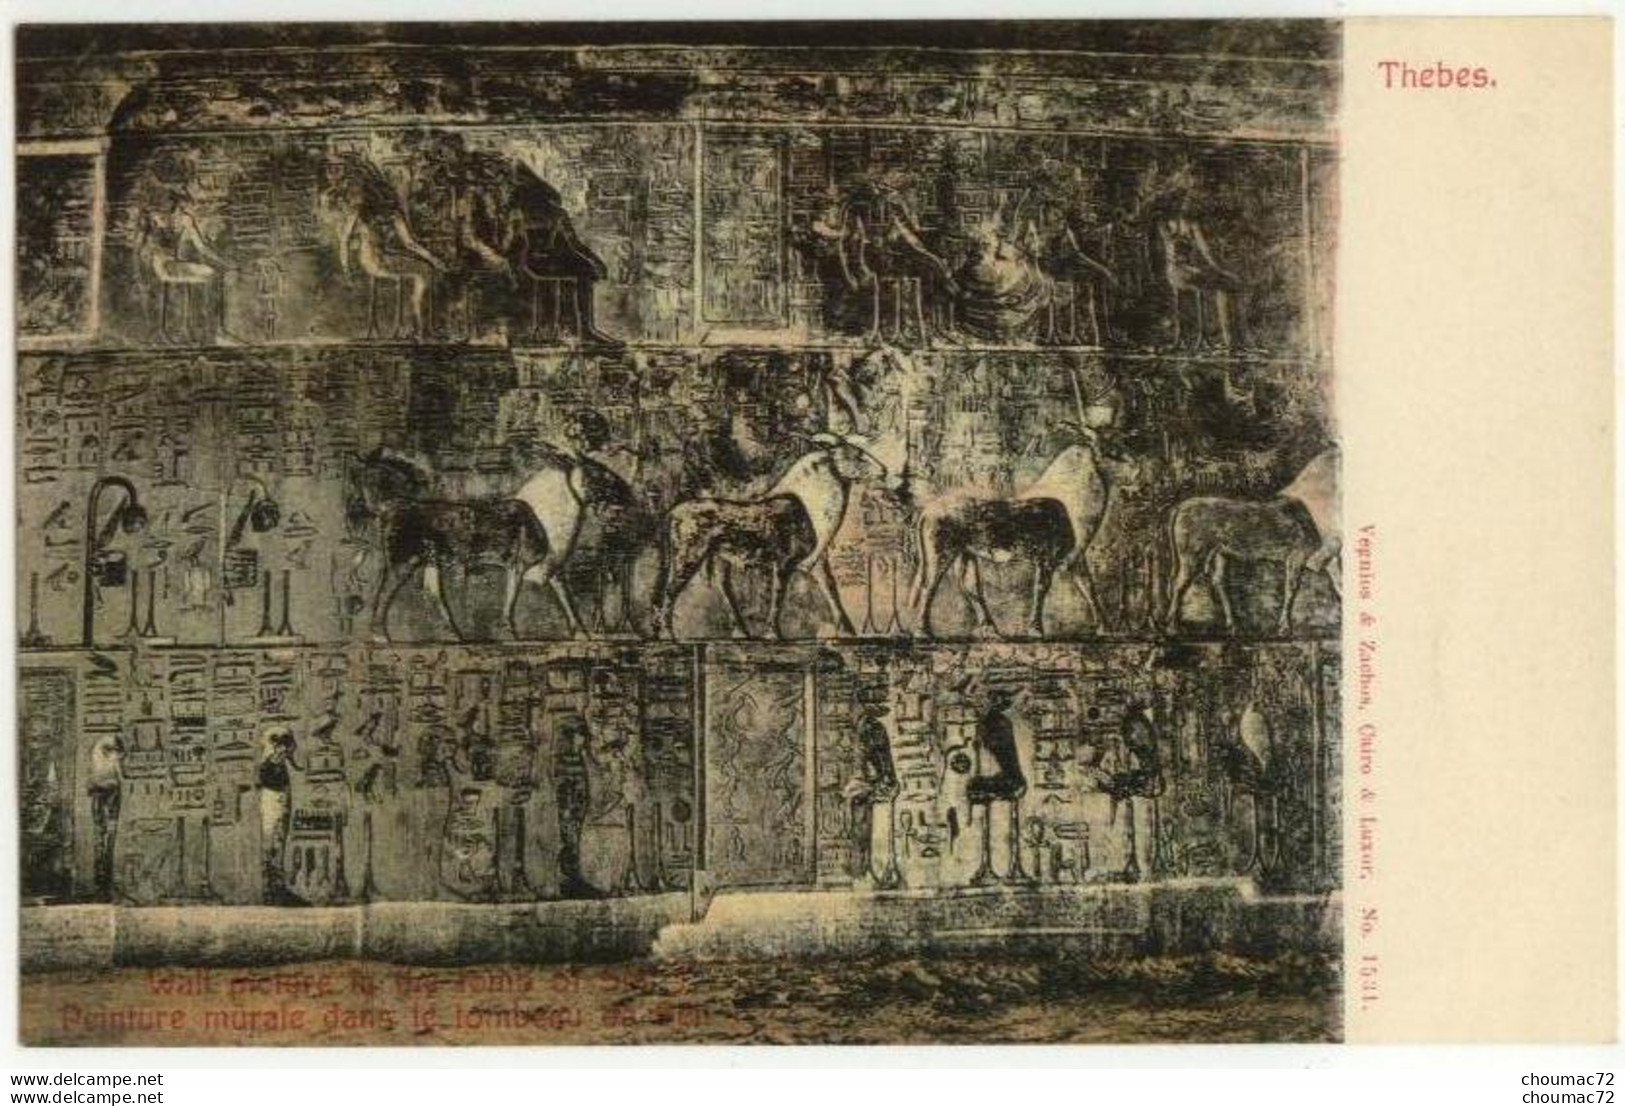 (Egypte) 051, Thebes, Vergnios & Zachos 1531, Peinture Murale Dans Le Tombeau De Séti - Luxor